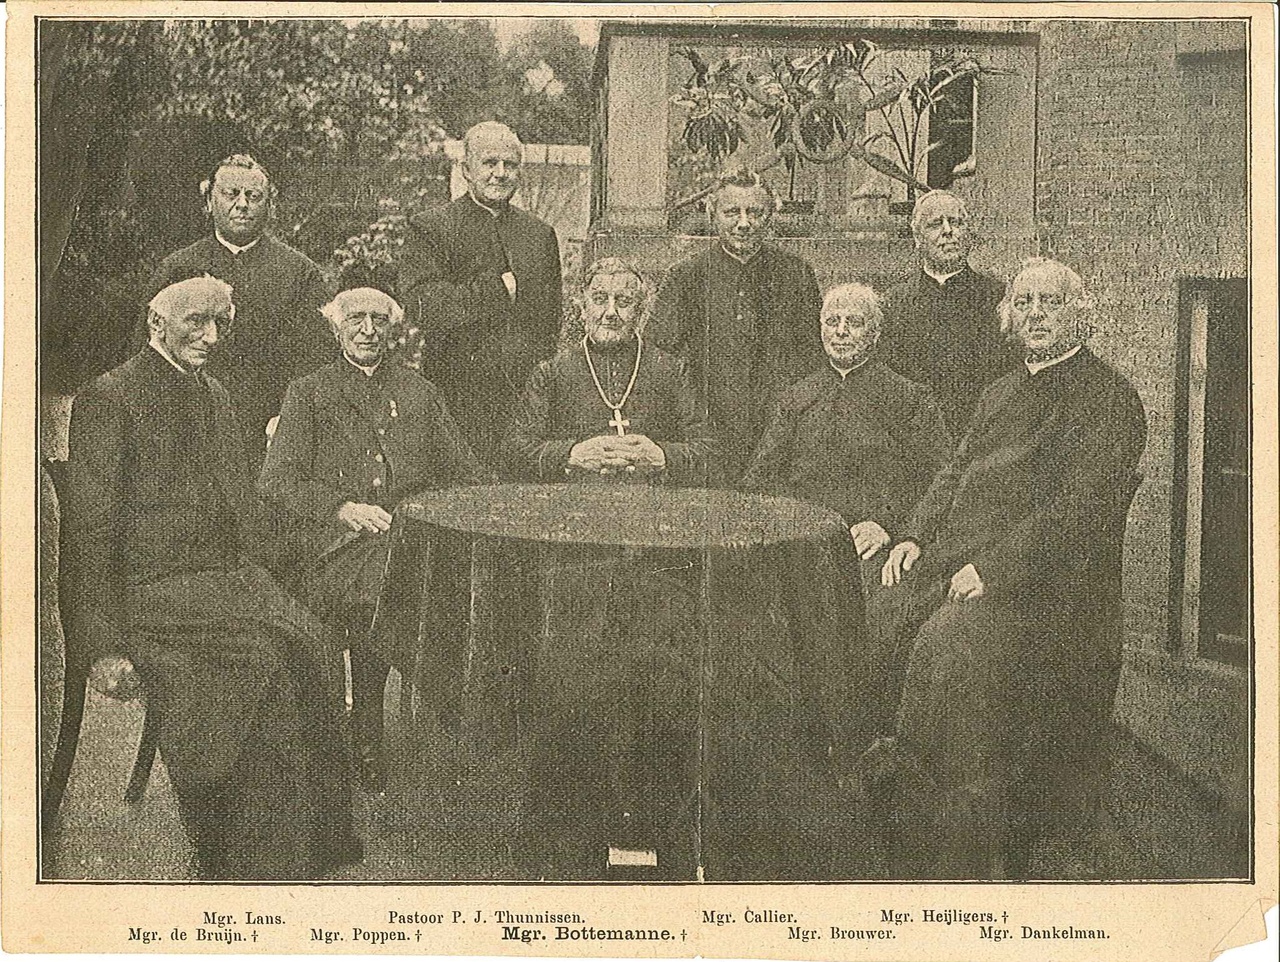 Krantenknipsel met daarop een foto met negen priesters waarvan acht monseigneurs en een pastoor